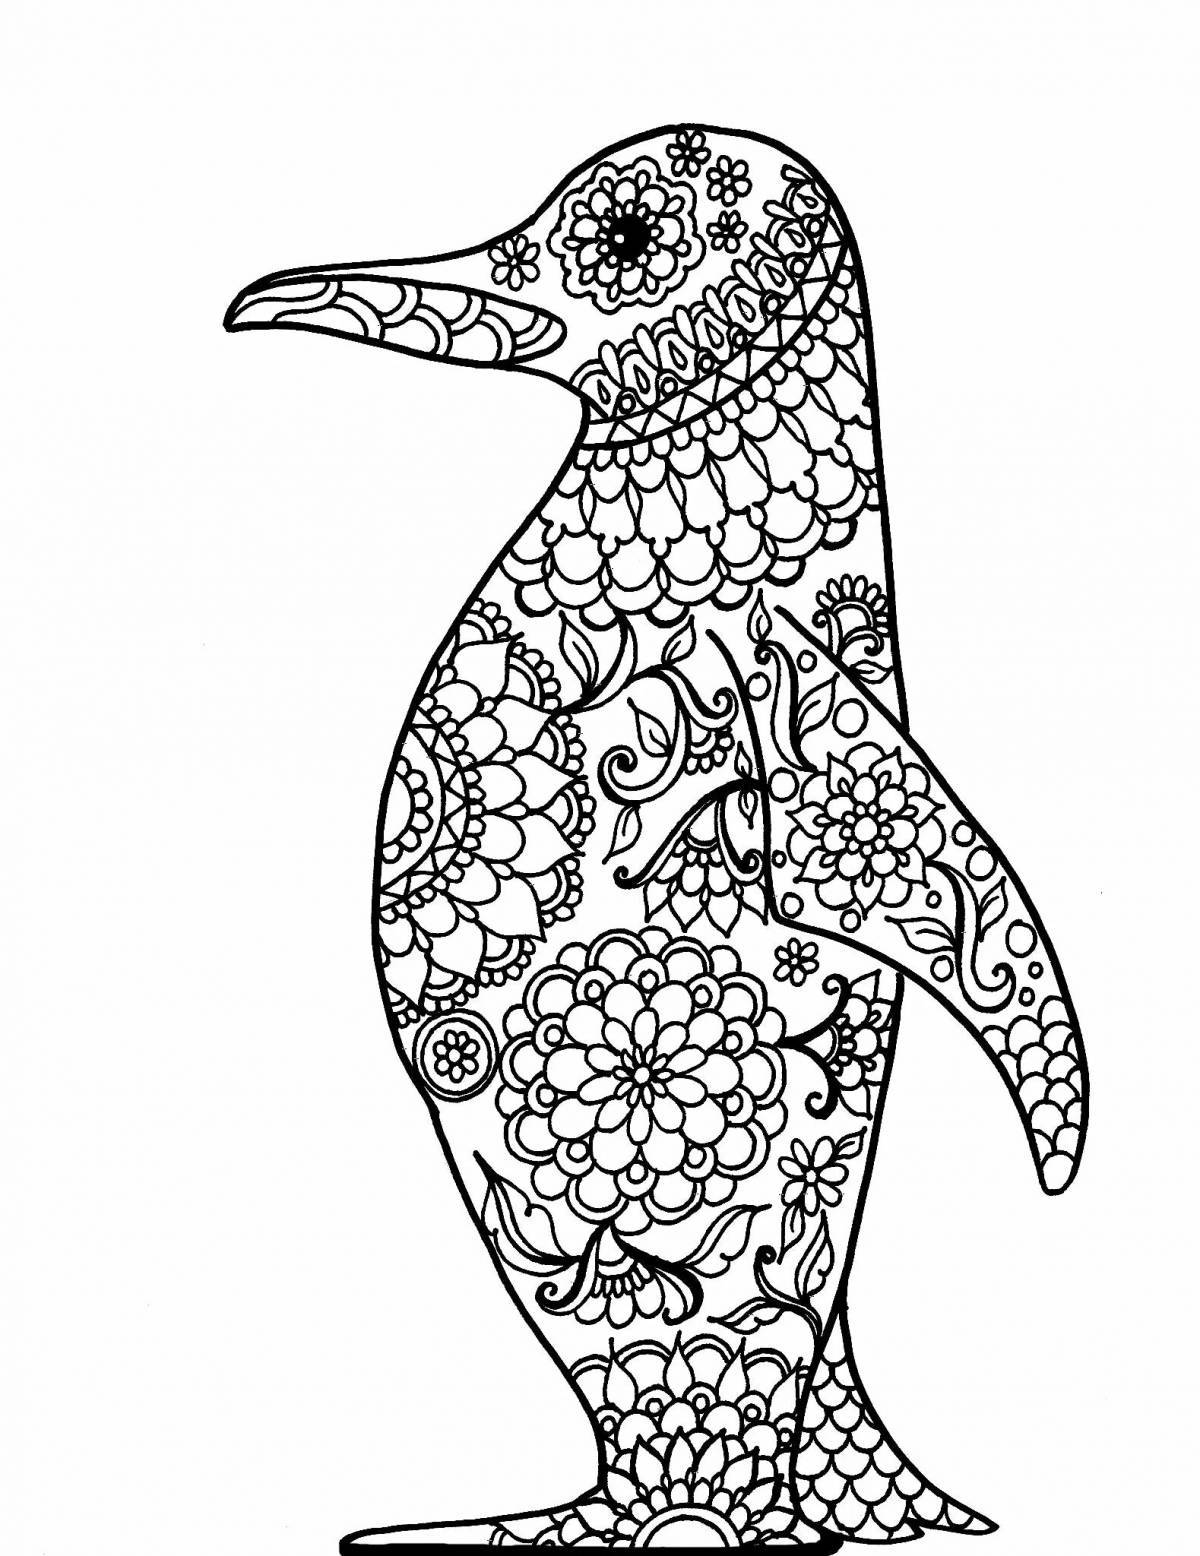 Антистресс пингвин #26